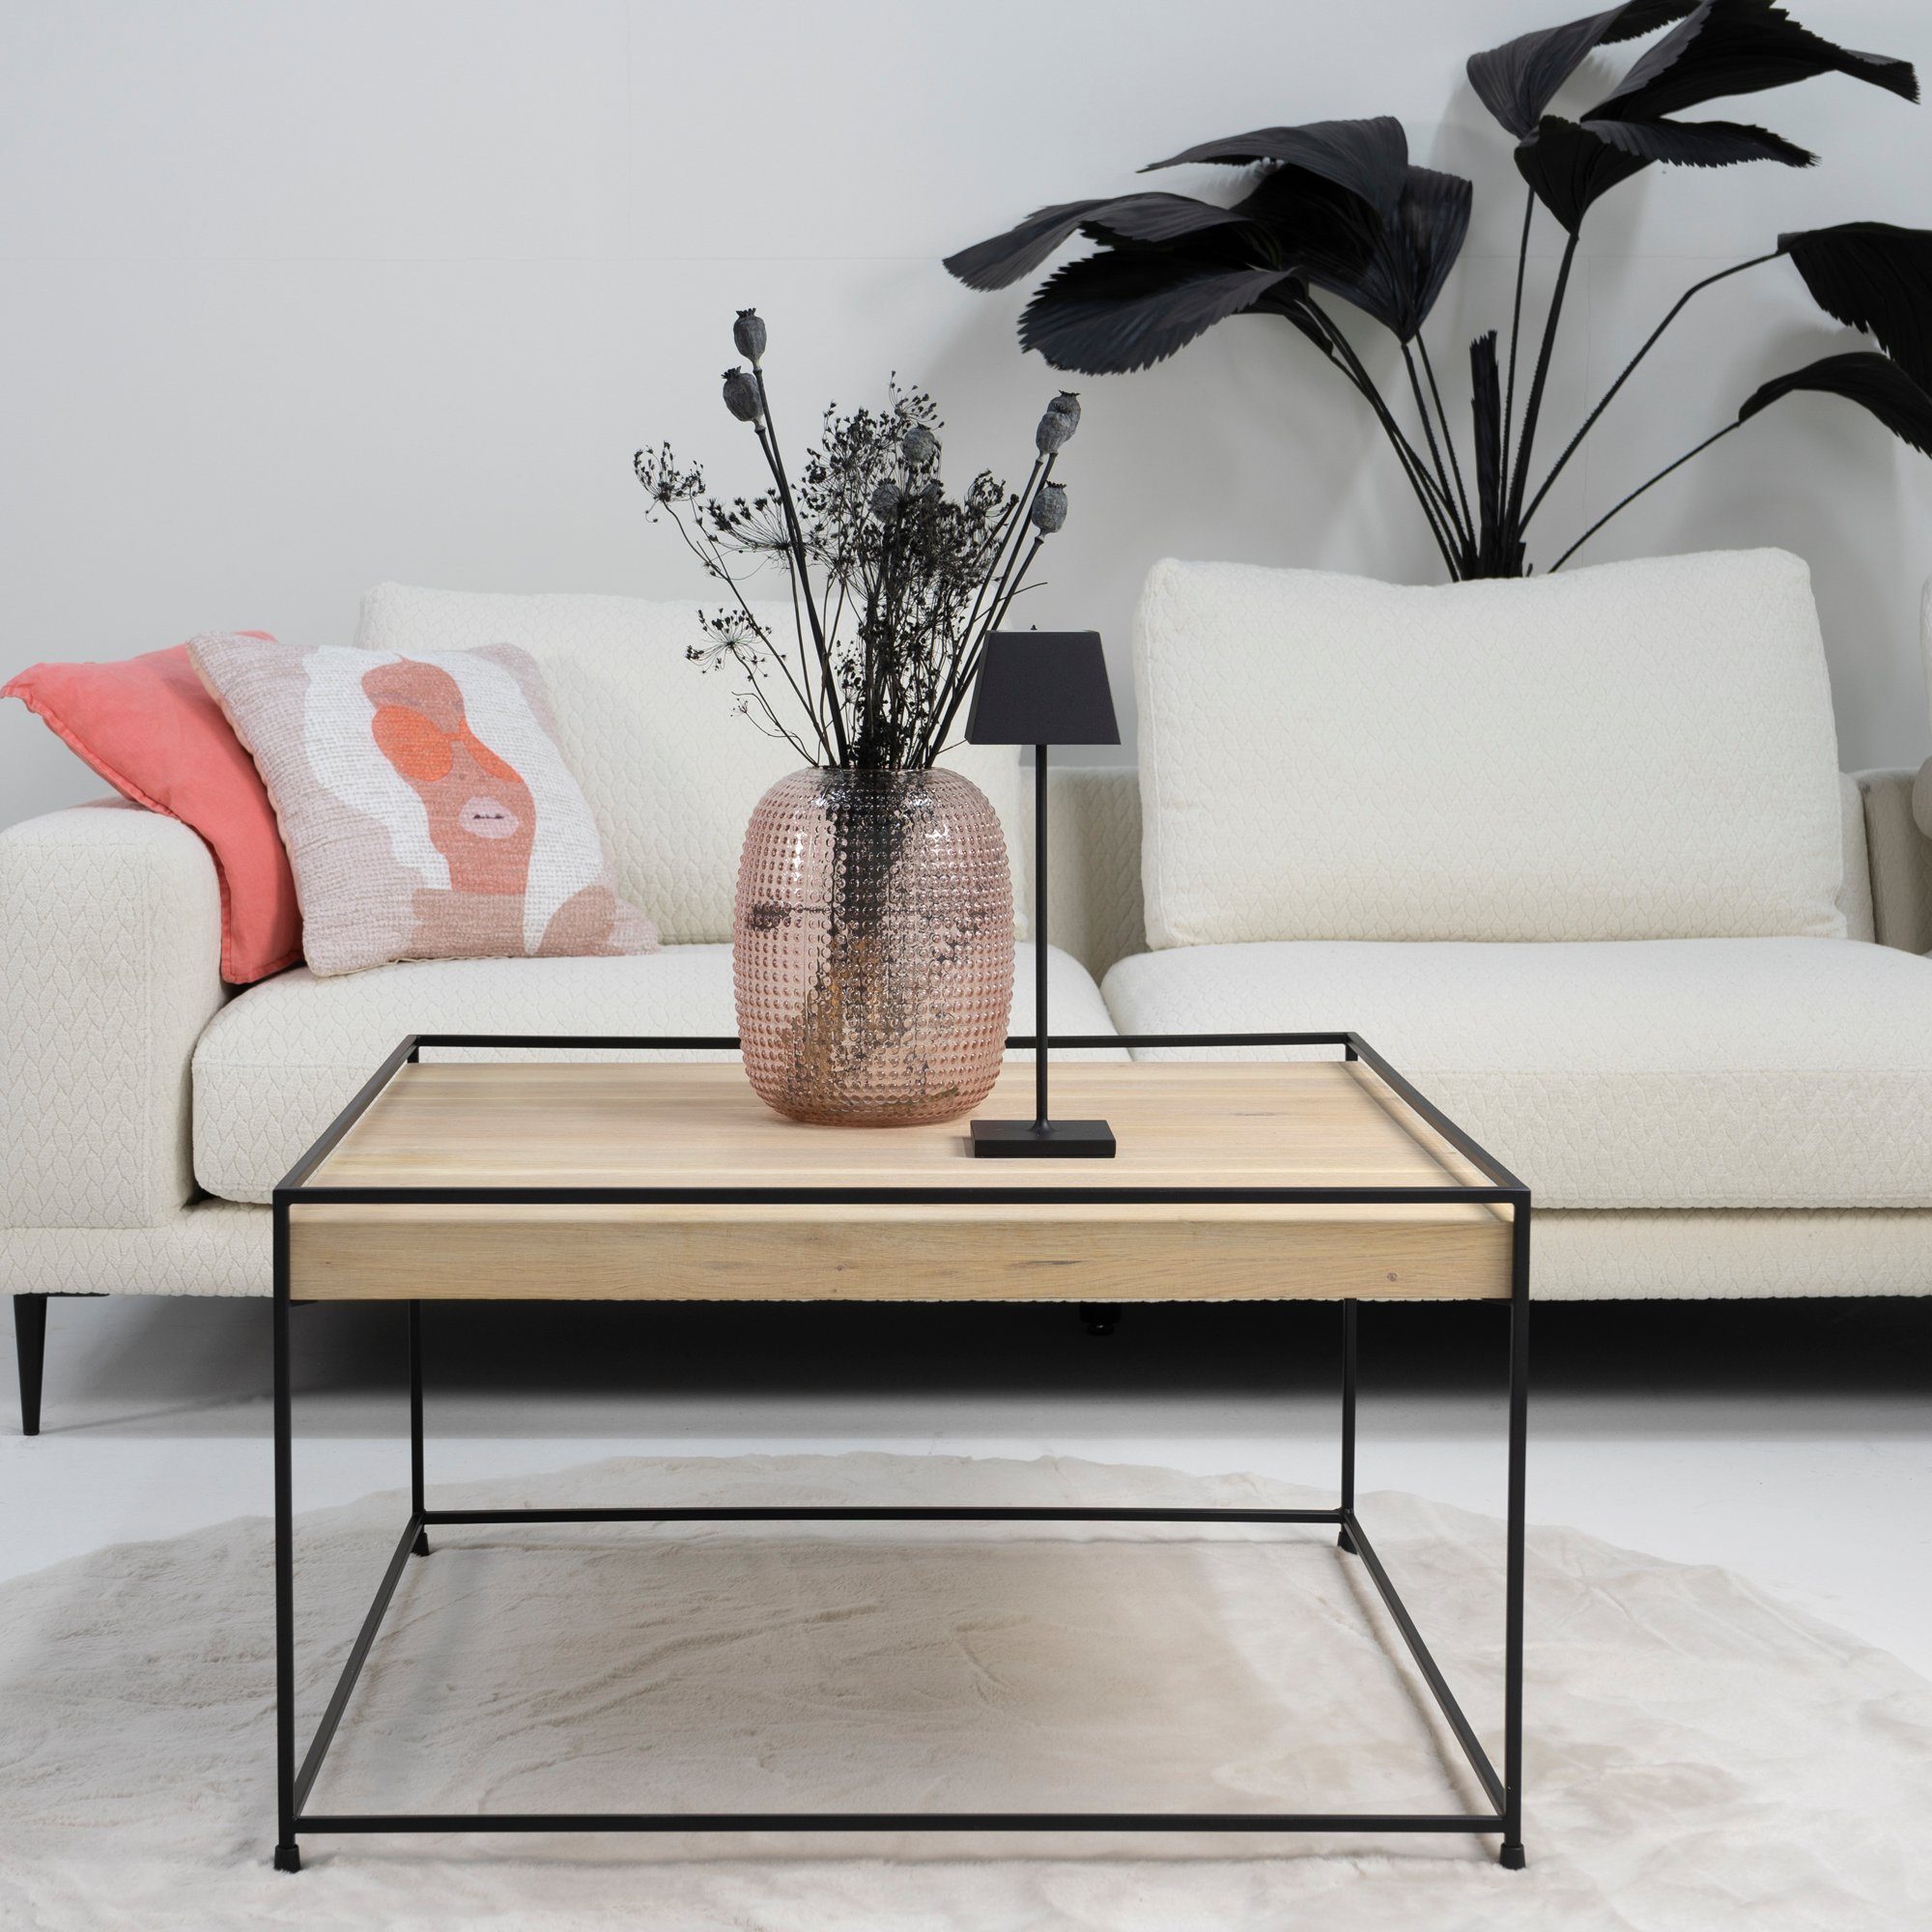 Torna Design Torna Beistelltisch Schwarz THIN 80 Beistelltisch WOOD Furniture BIANCO - 80x46x80cm